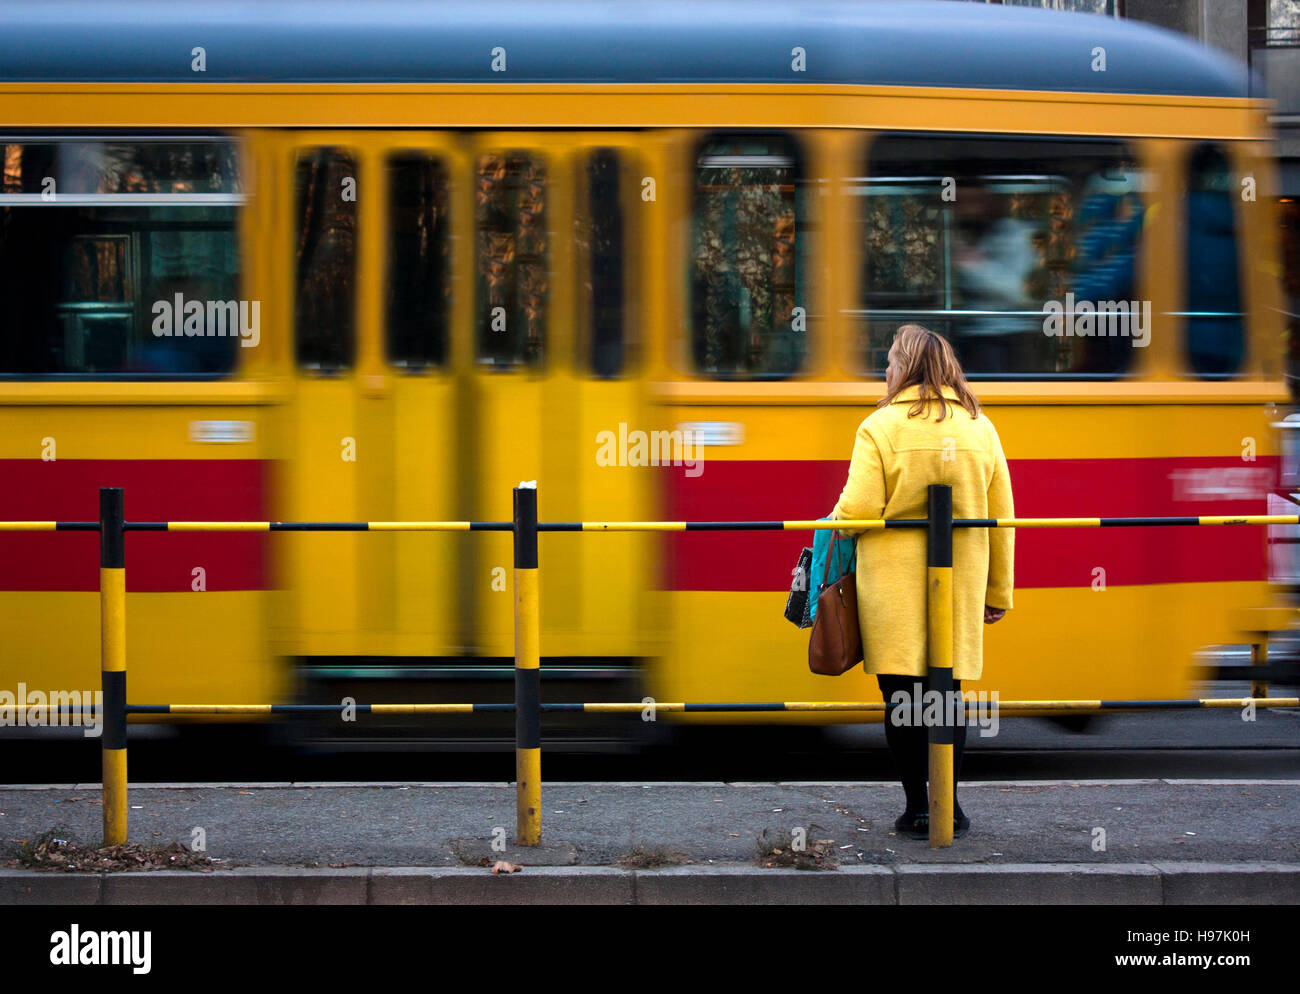 La donna in giallo e il cappotto di un giallo rosso il tram che passa in motion blur Foto Stock